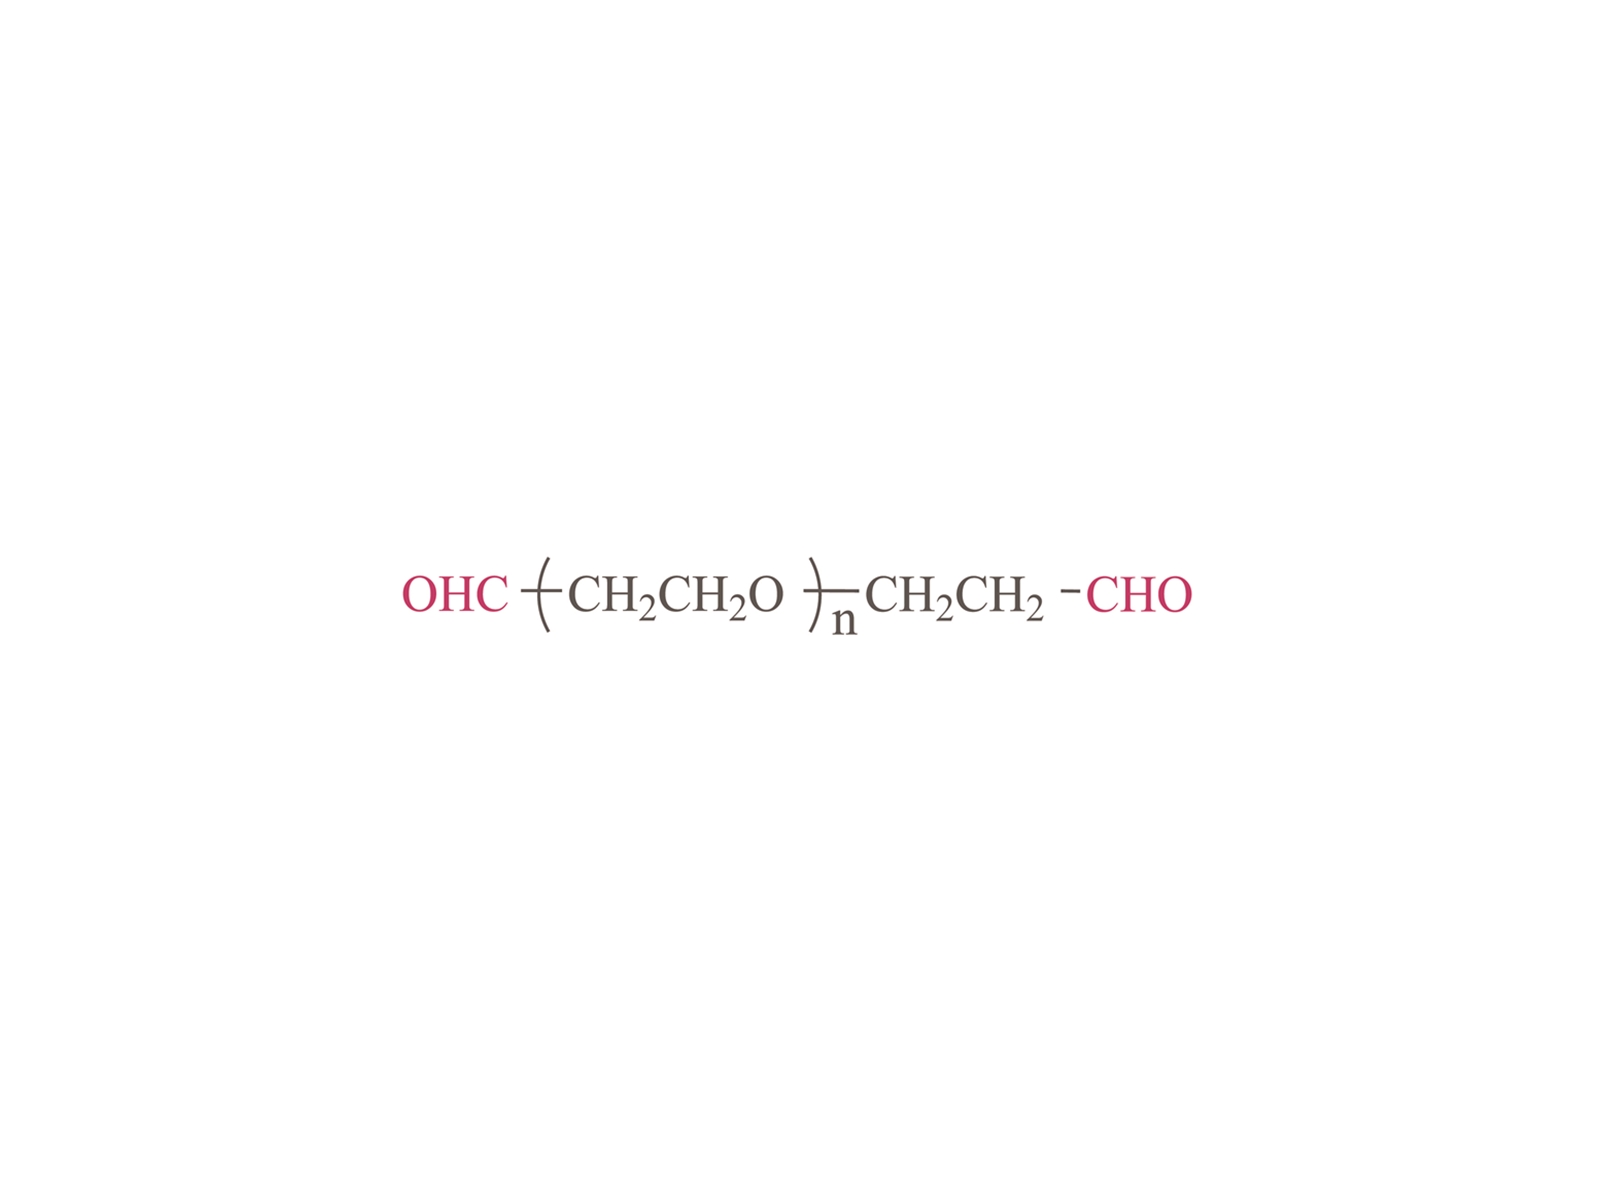 α, Ω-diformyl poly (ethyleenglycol) [ohc-peg-cho]